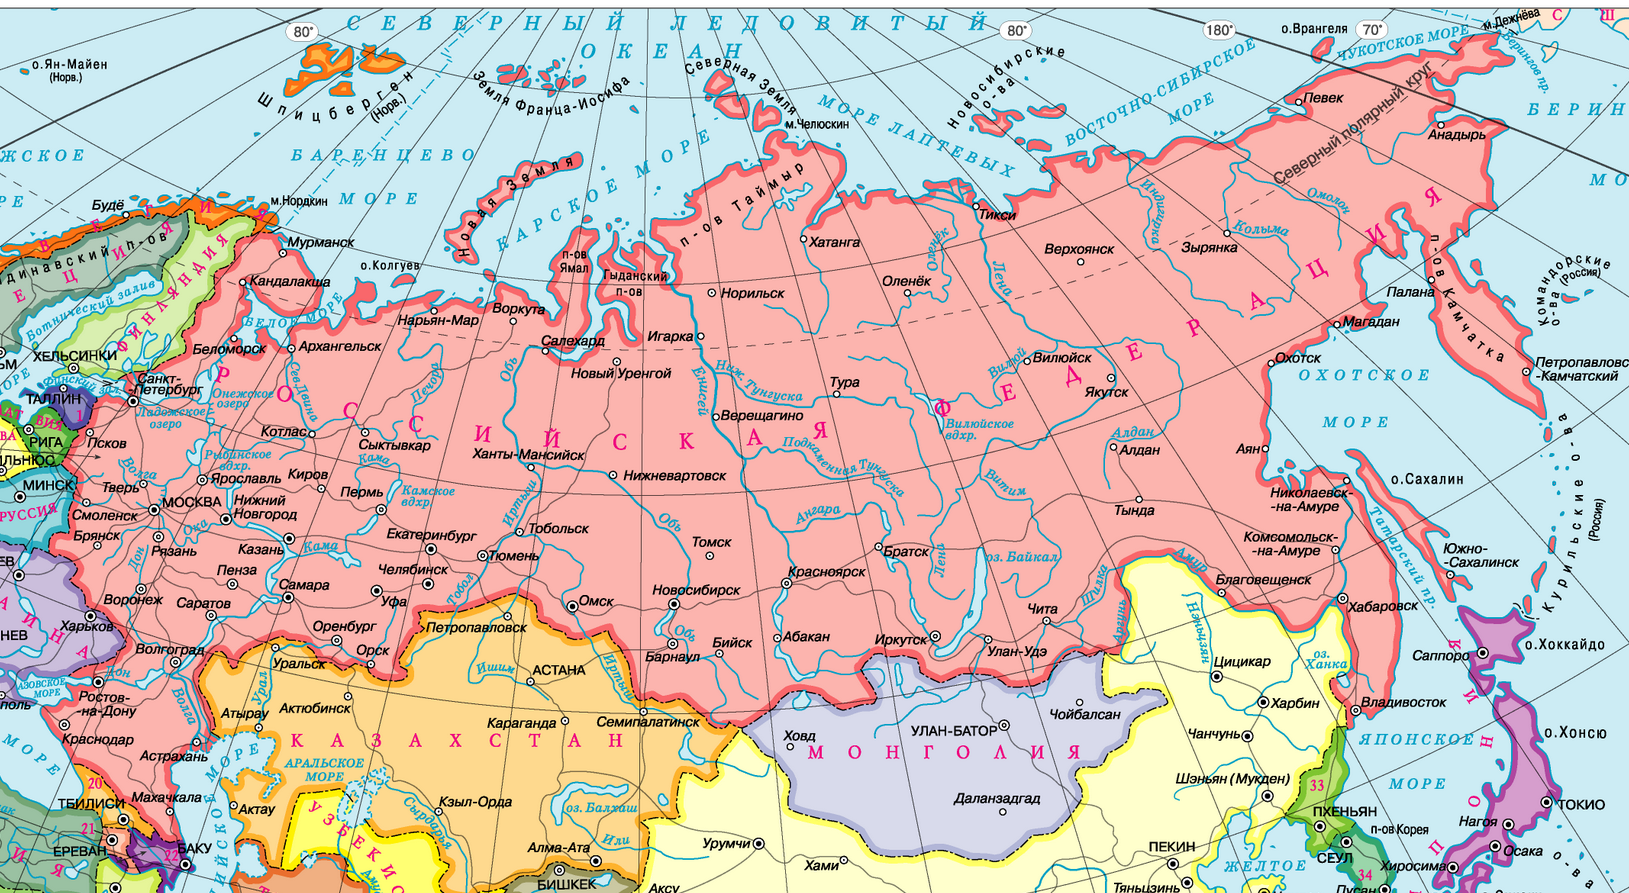 Карта россии с городами и областями крупным планом на русском языке